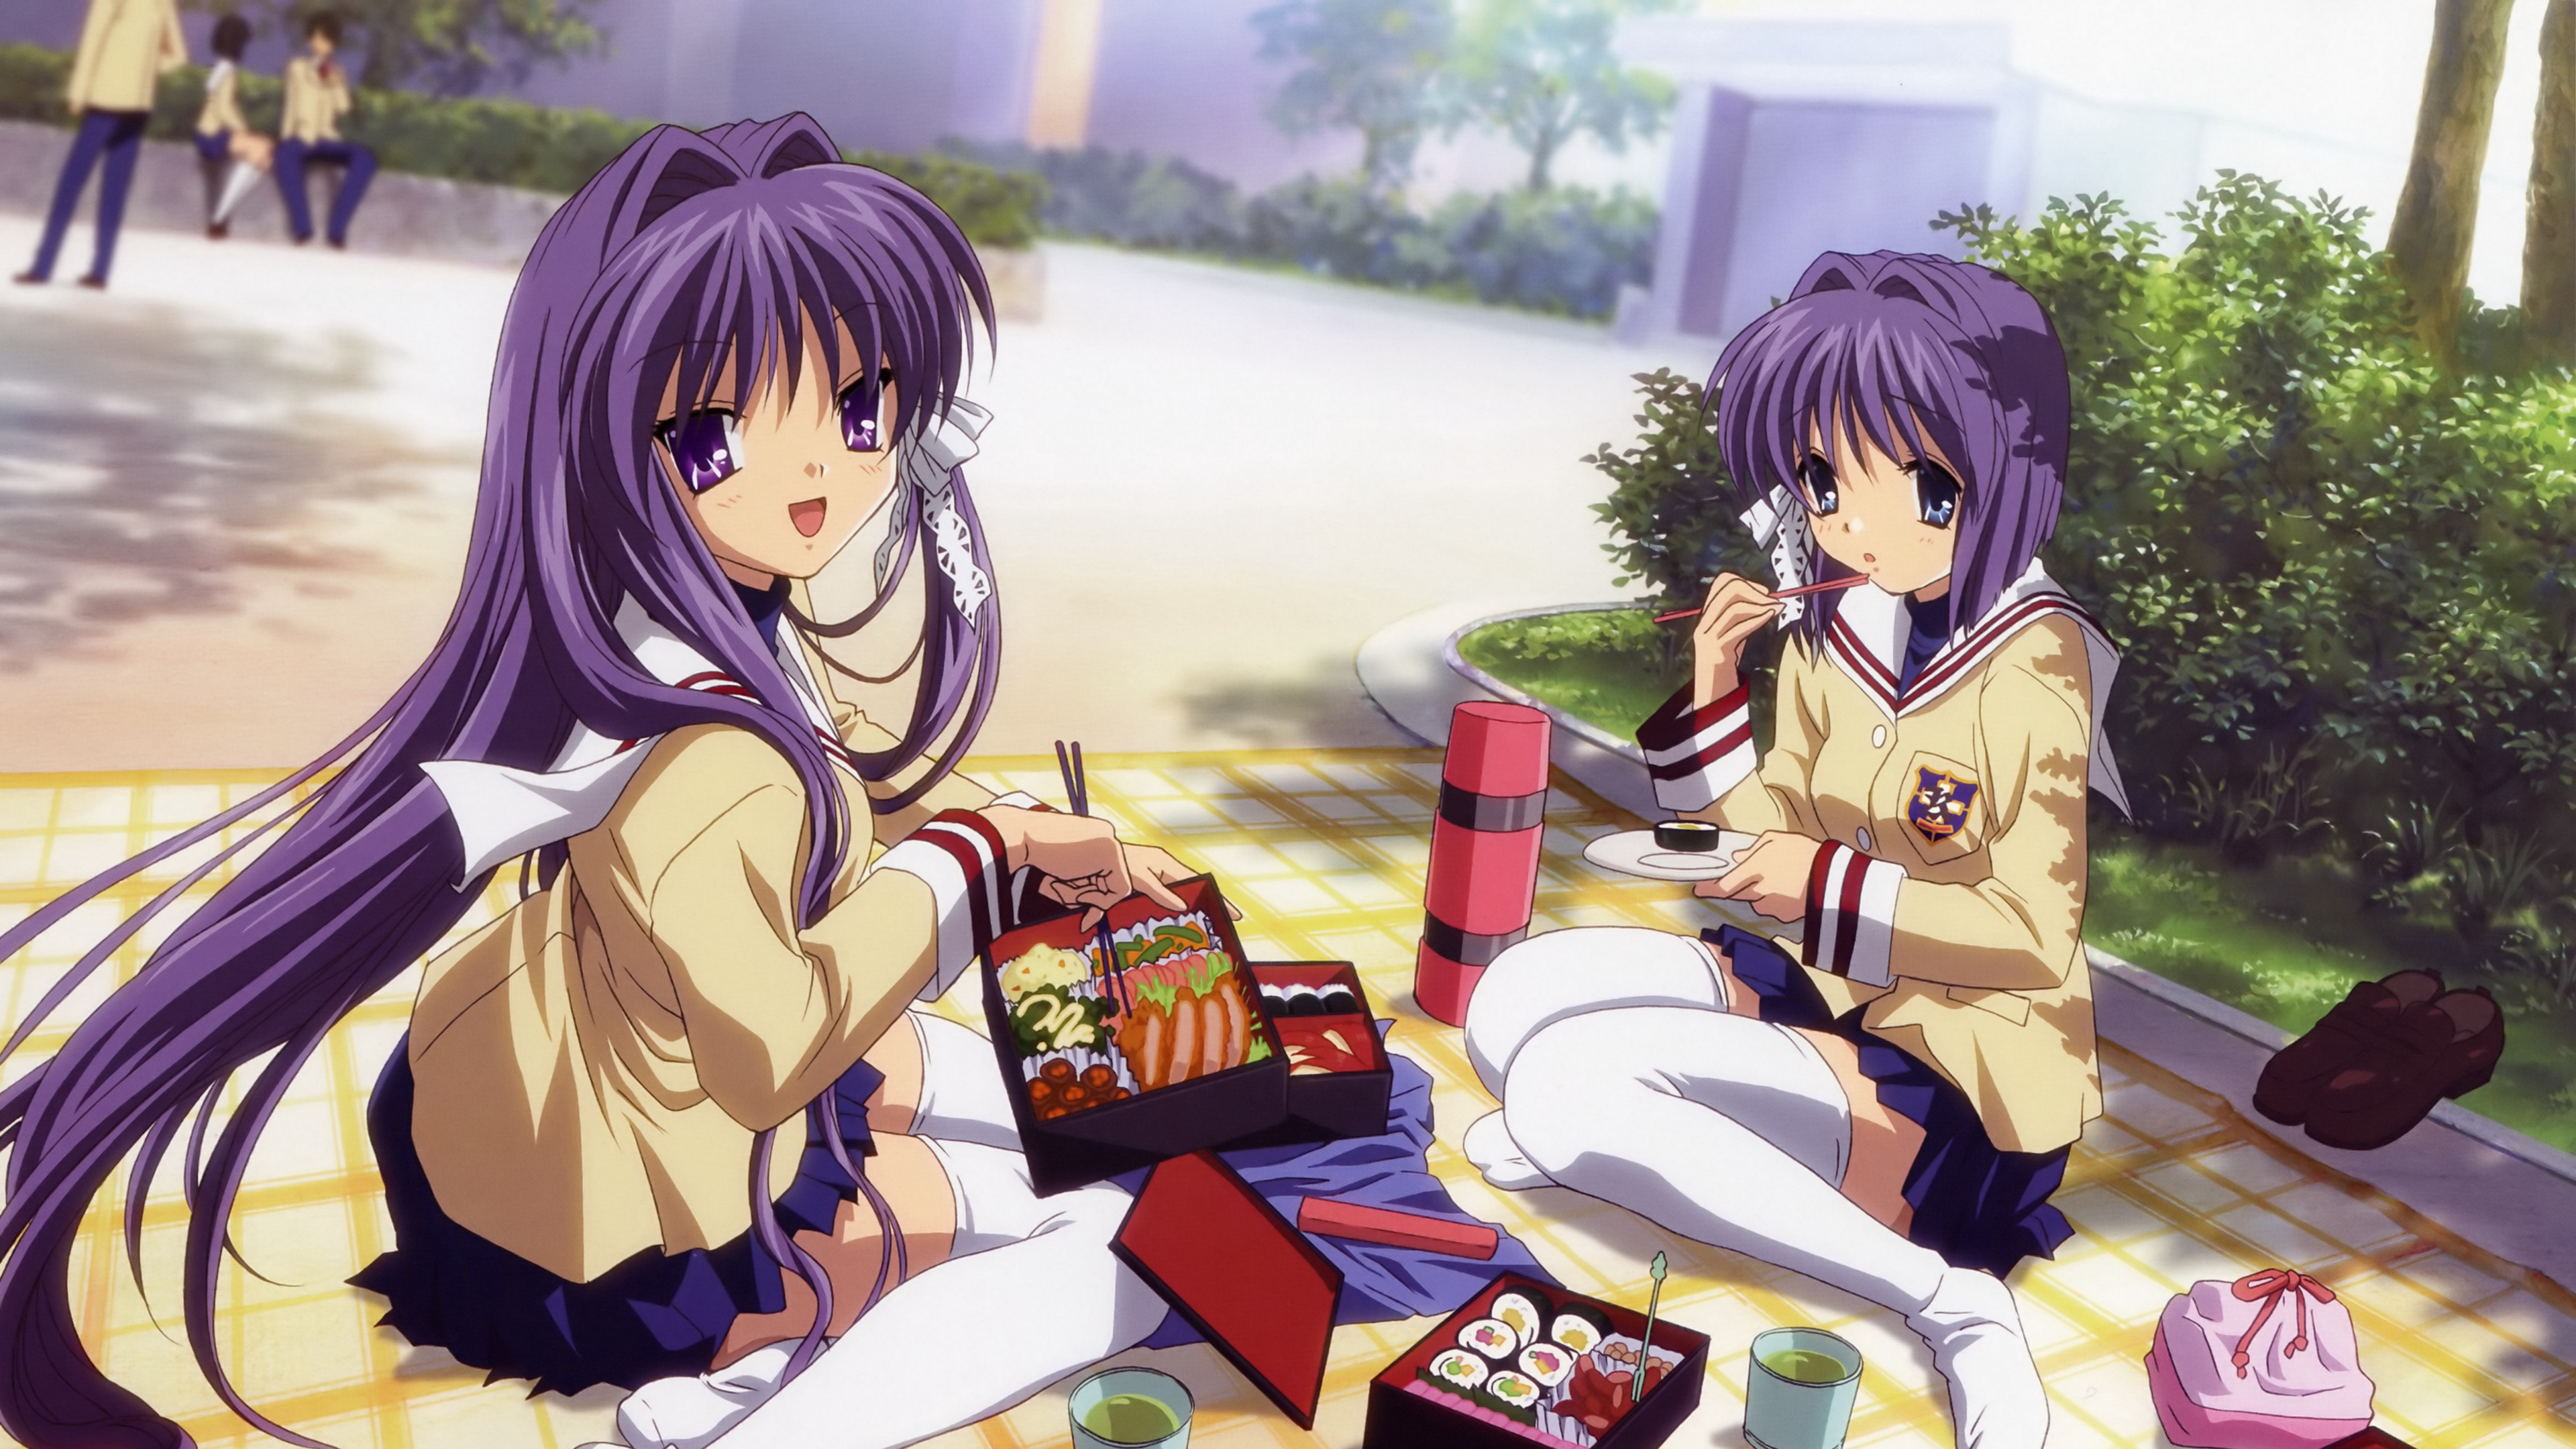 Anime Girl Spring Food Picnic 4k - Anime Two Girl Eating Food - HD Wallpaper 